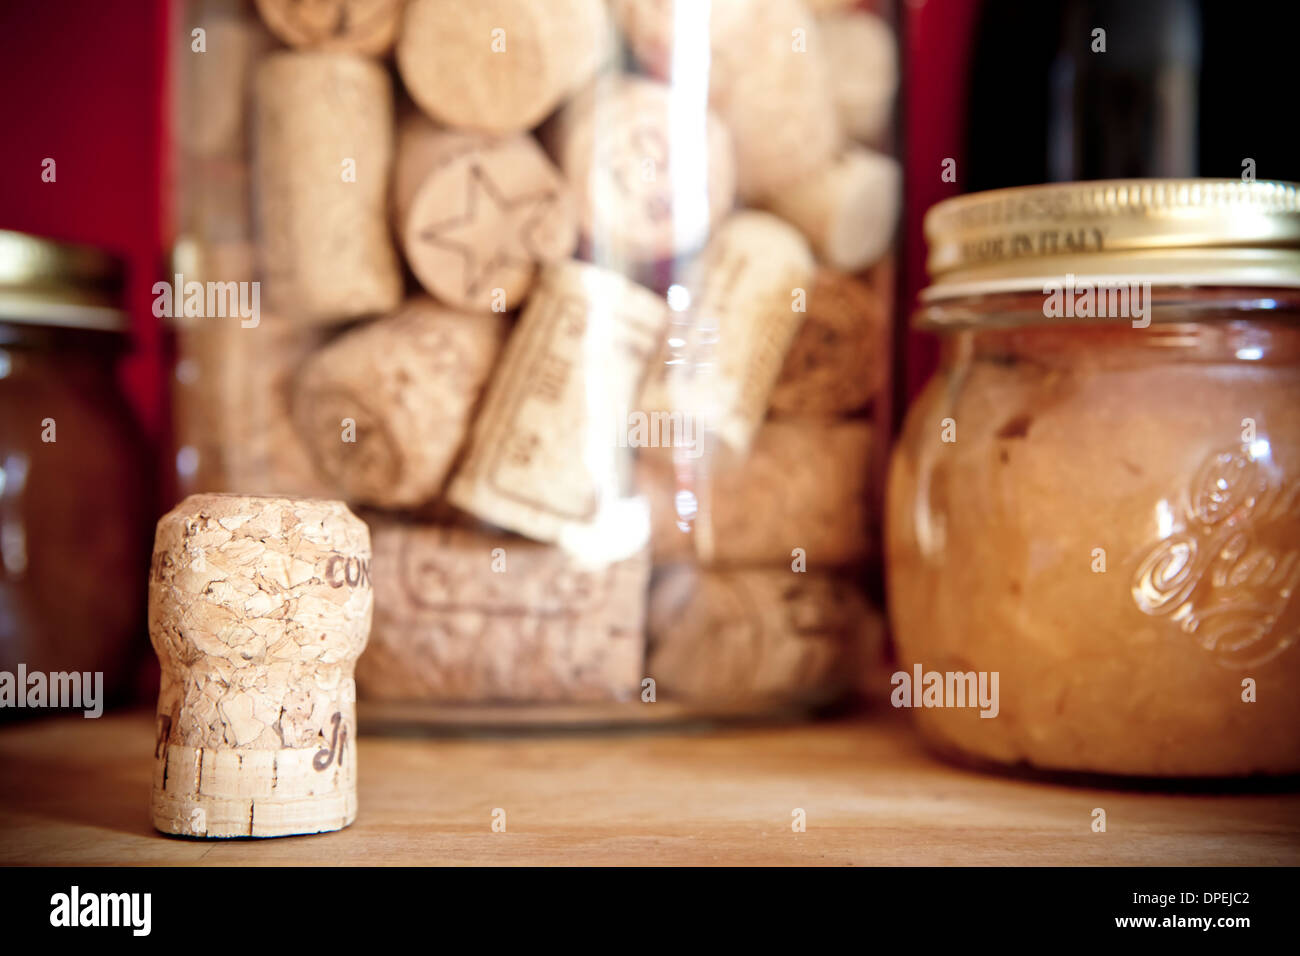 Tappi sughero vaso immagini e fotografie stock ad alta risoluzione - Alamy